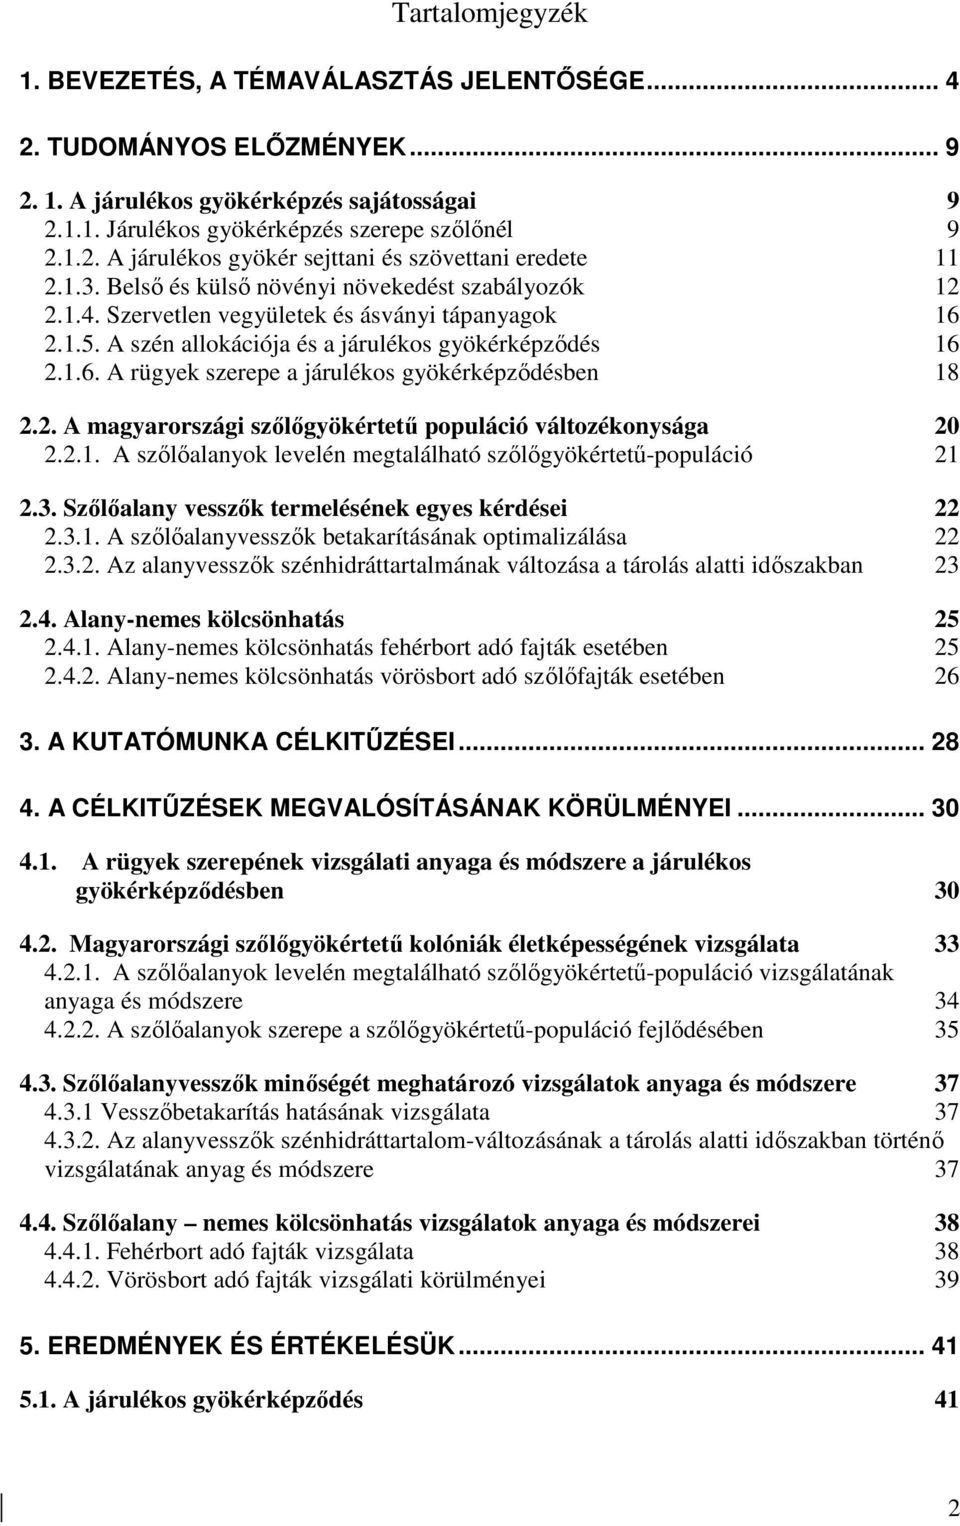 2. A magyarországi szılıgyökértető populáció változékonysága 20 2.2.1. A szılıalanyok levelén megtalálható szılıgyökértető-populáció 21 2.3. Szılıalany vesszık termelésének egyes kérdései 22 2.3.1. A szılıalanyvesszık betakarításának optimalizálása 22 2.